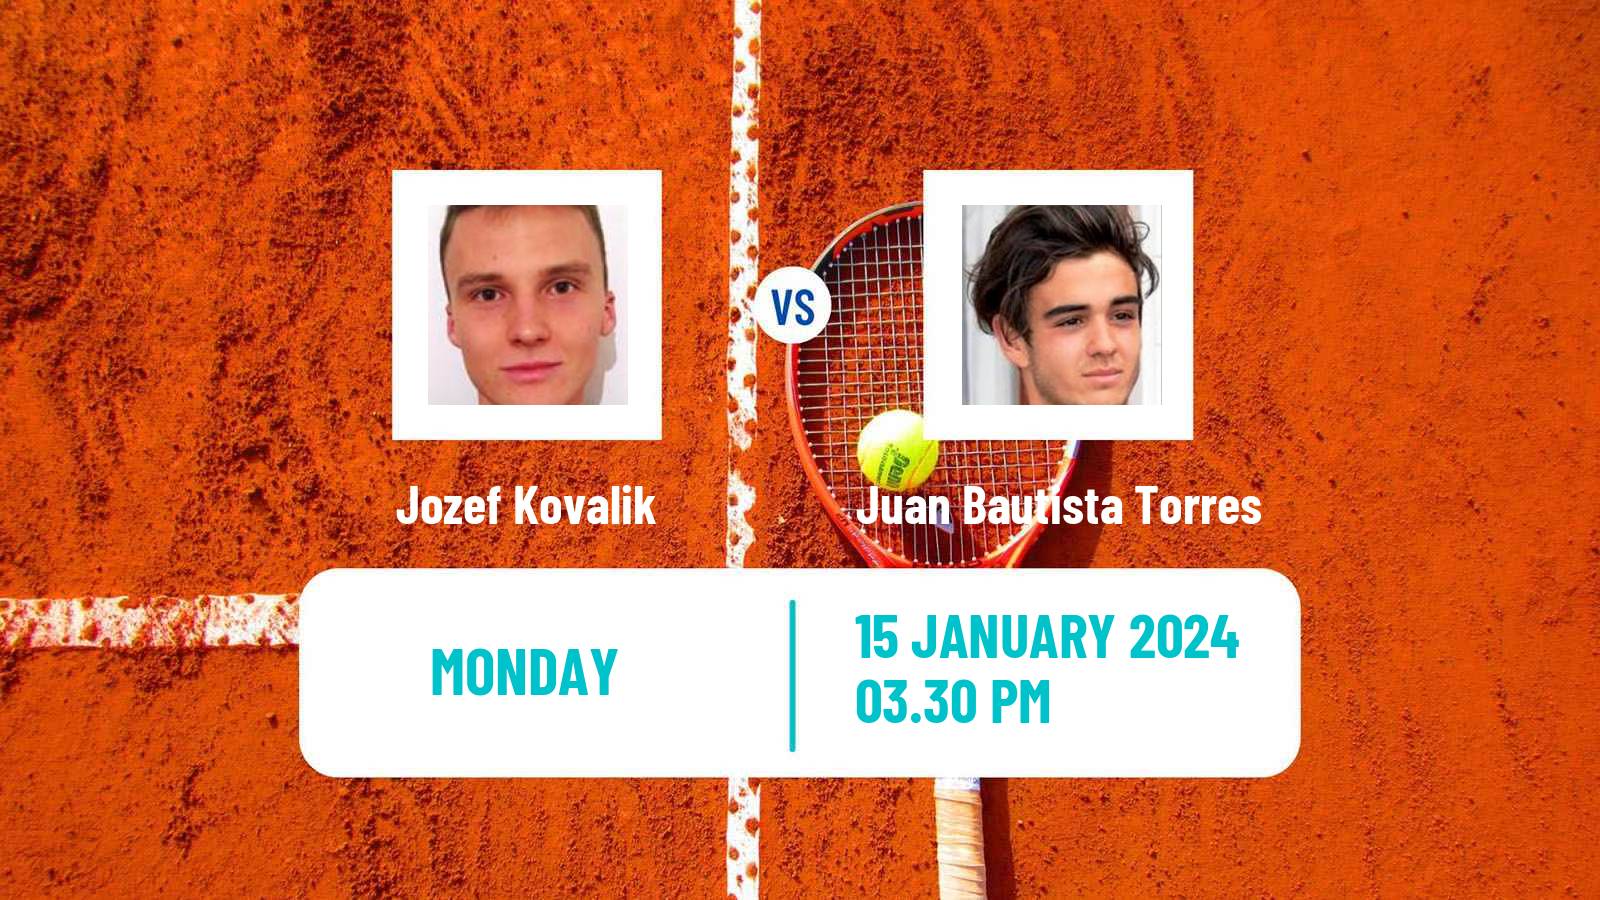 Tennis Buenos Aires 2 Challenger Men Jozef Kovalik - Juan Bautista Torres